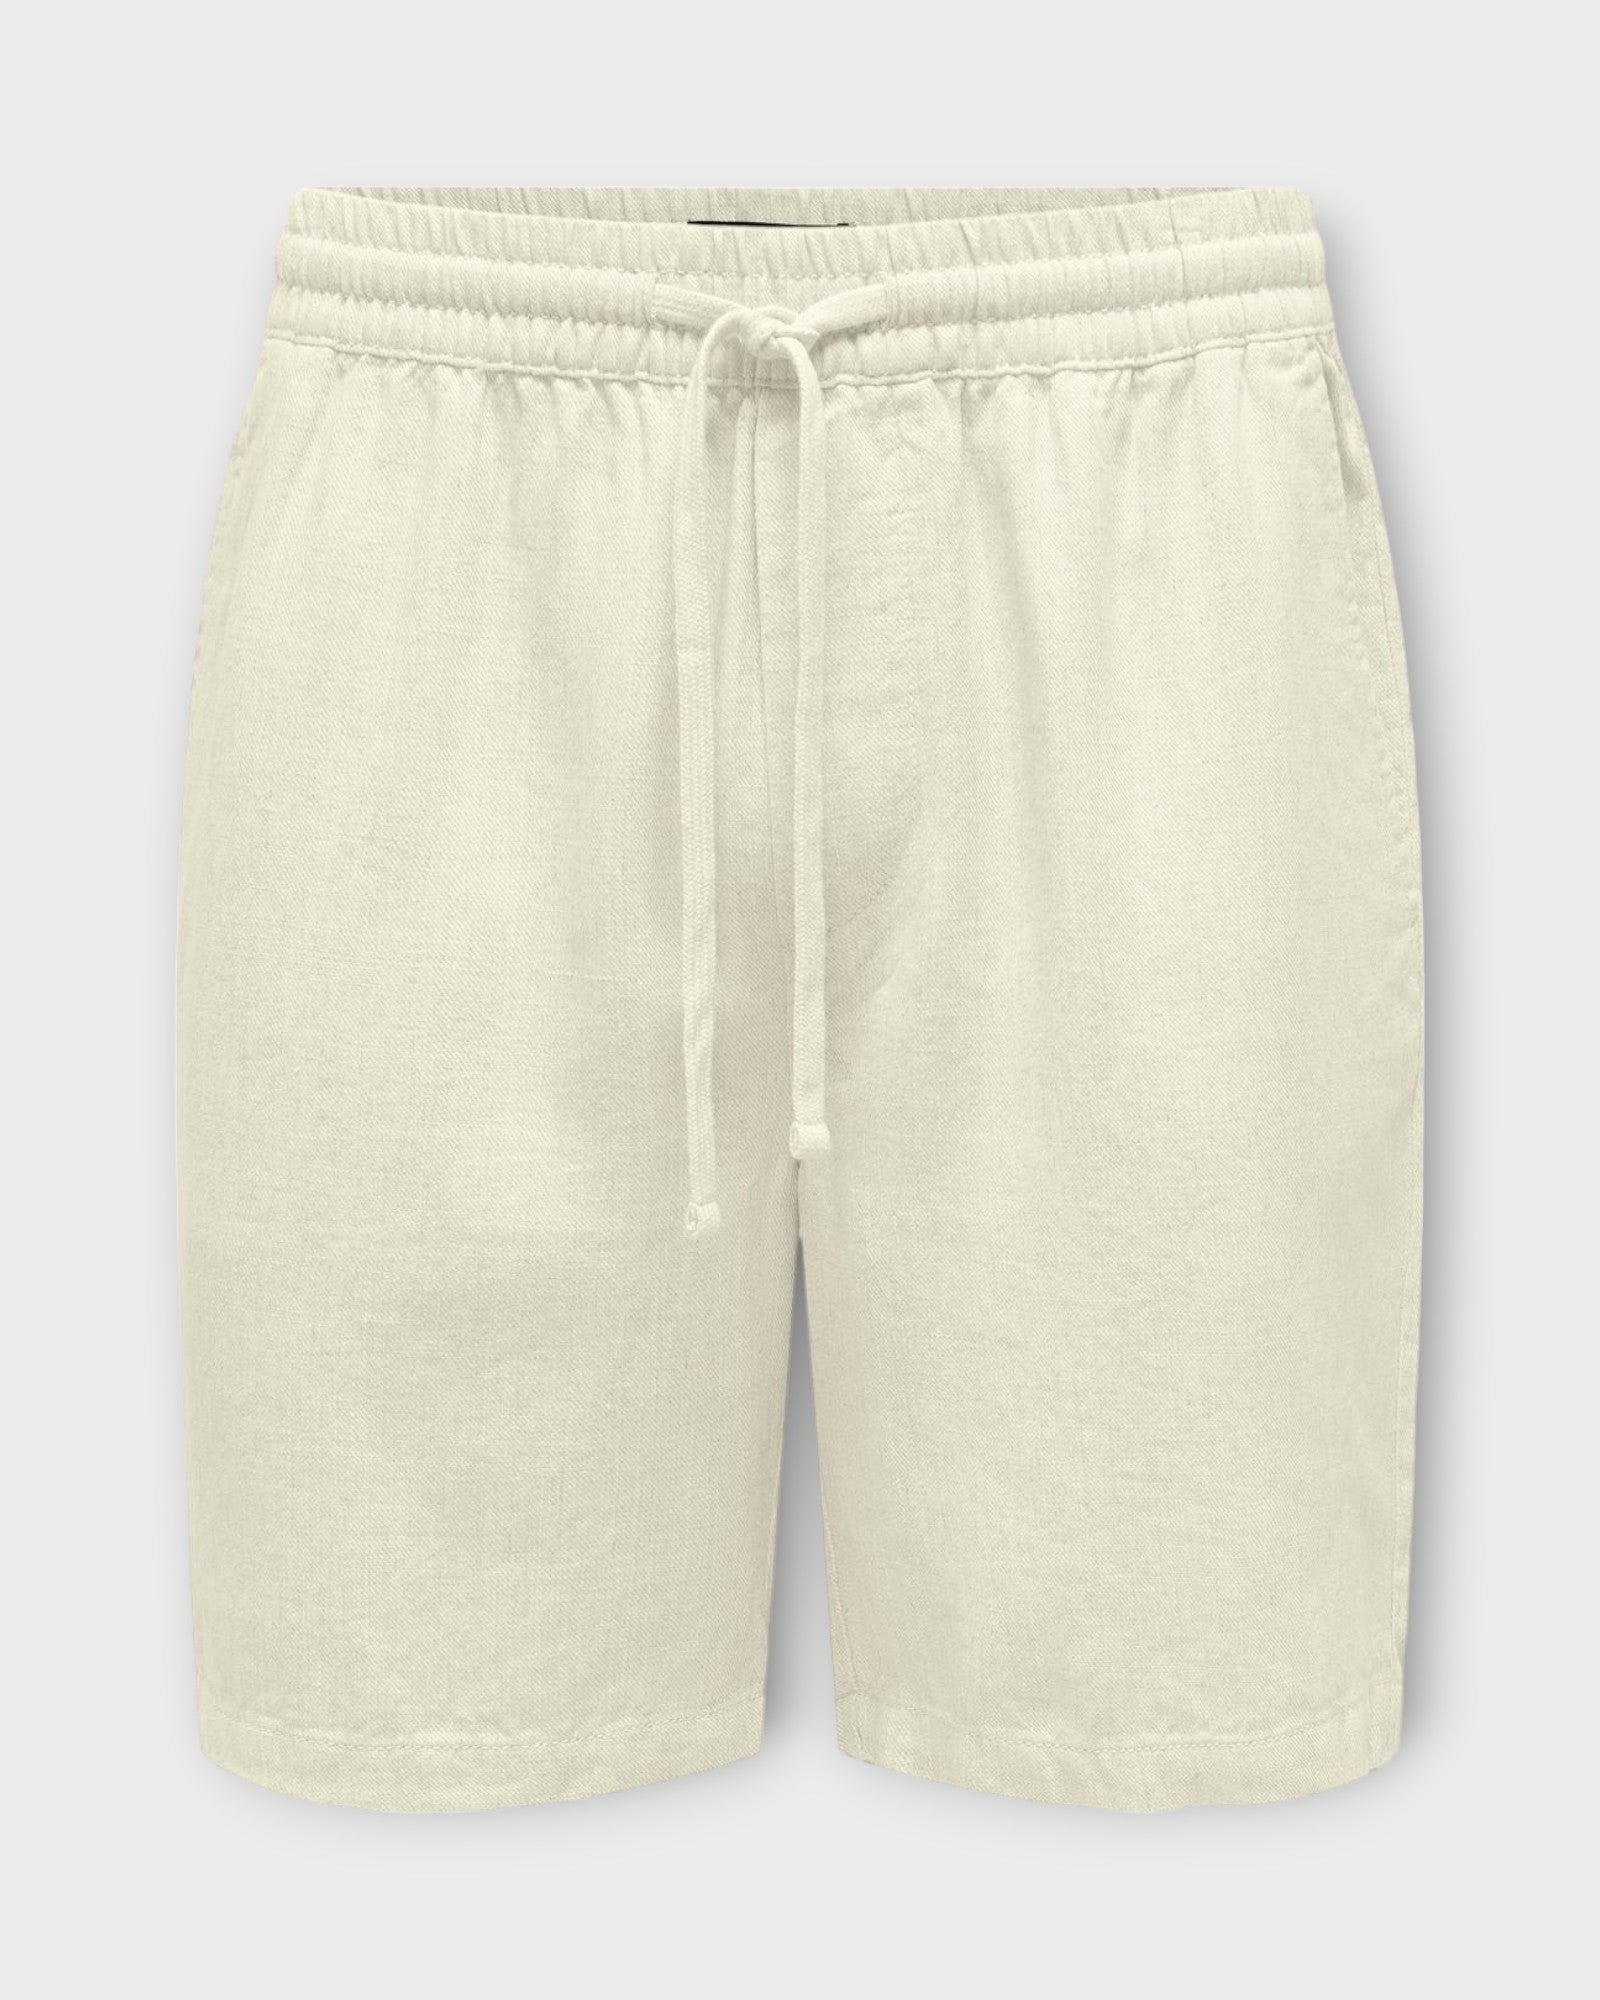 Stel Viscose Linen Shorts White fra Only and Sons. Hvide hør shorts til mænd med elastik og snører i livet. Her set forfra.